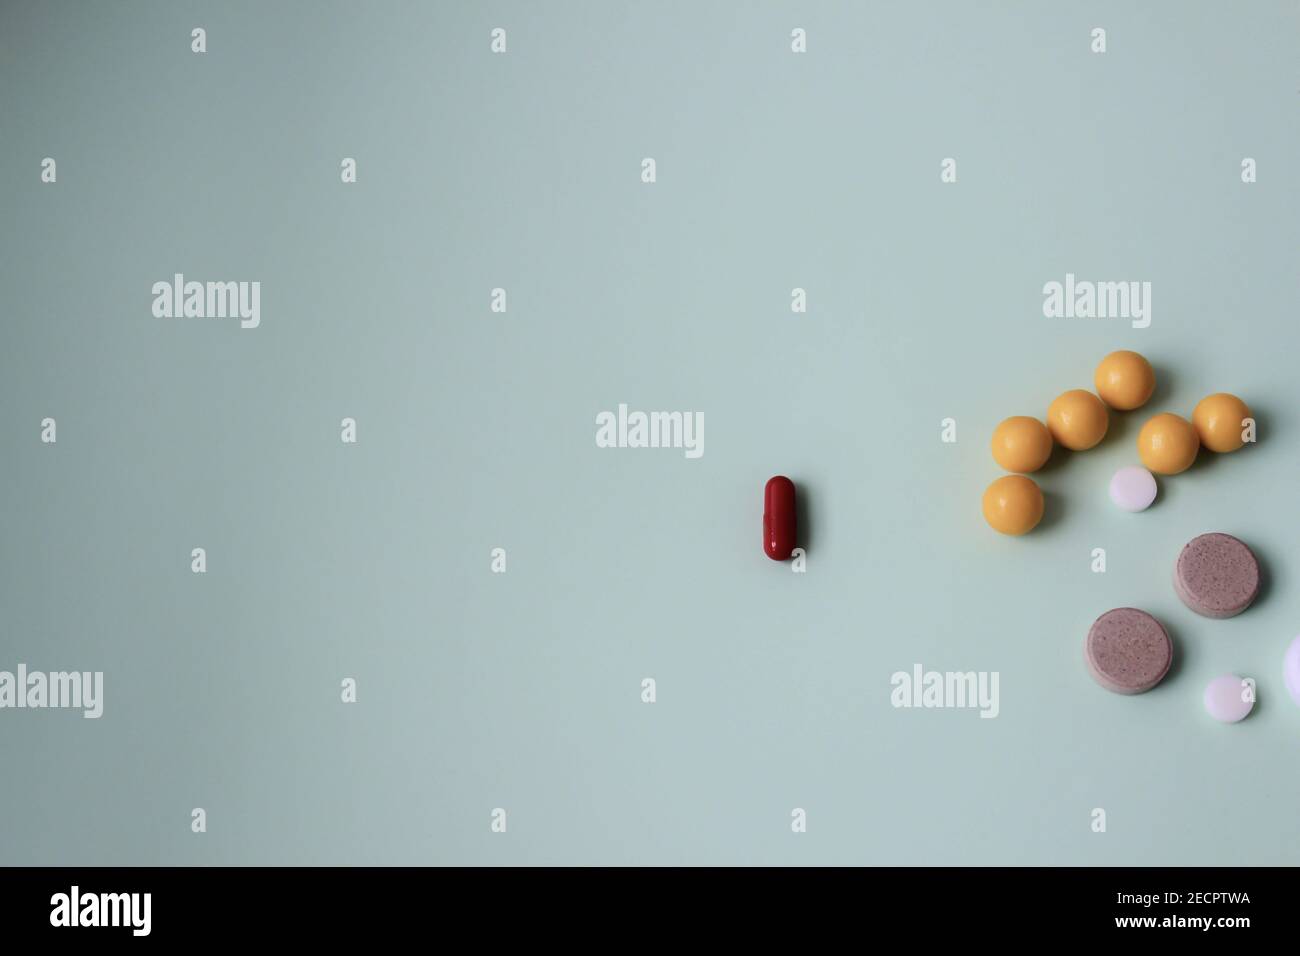 Bunte Vitamintabletten, Medikamententabletten und Kapseln auf abstrakt grünem Hintergrund. Stockfoto